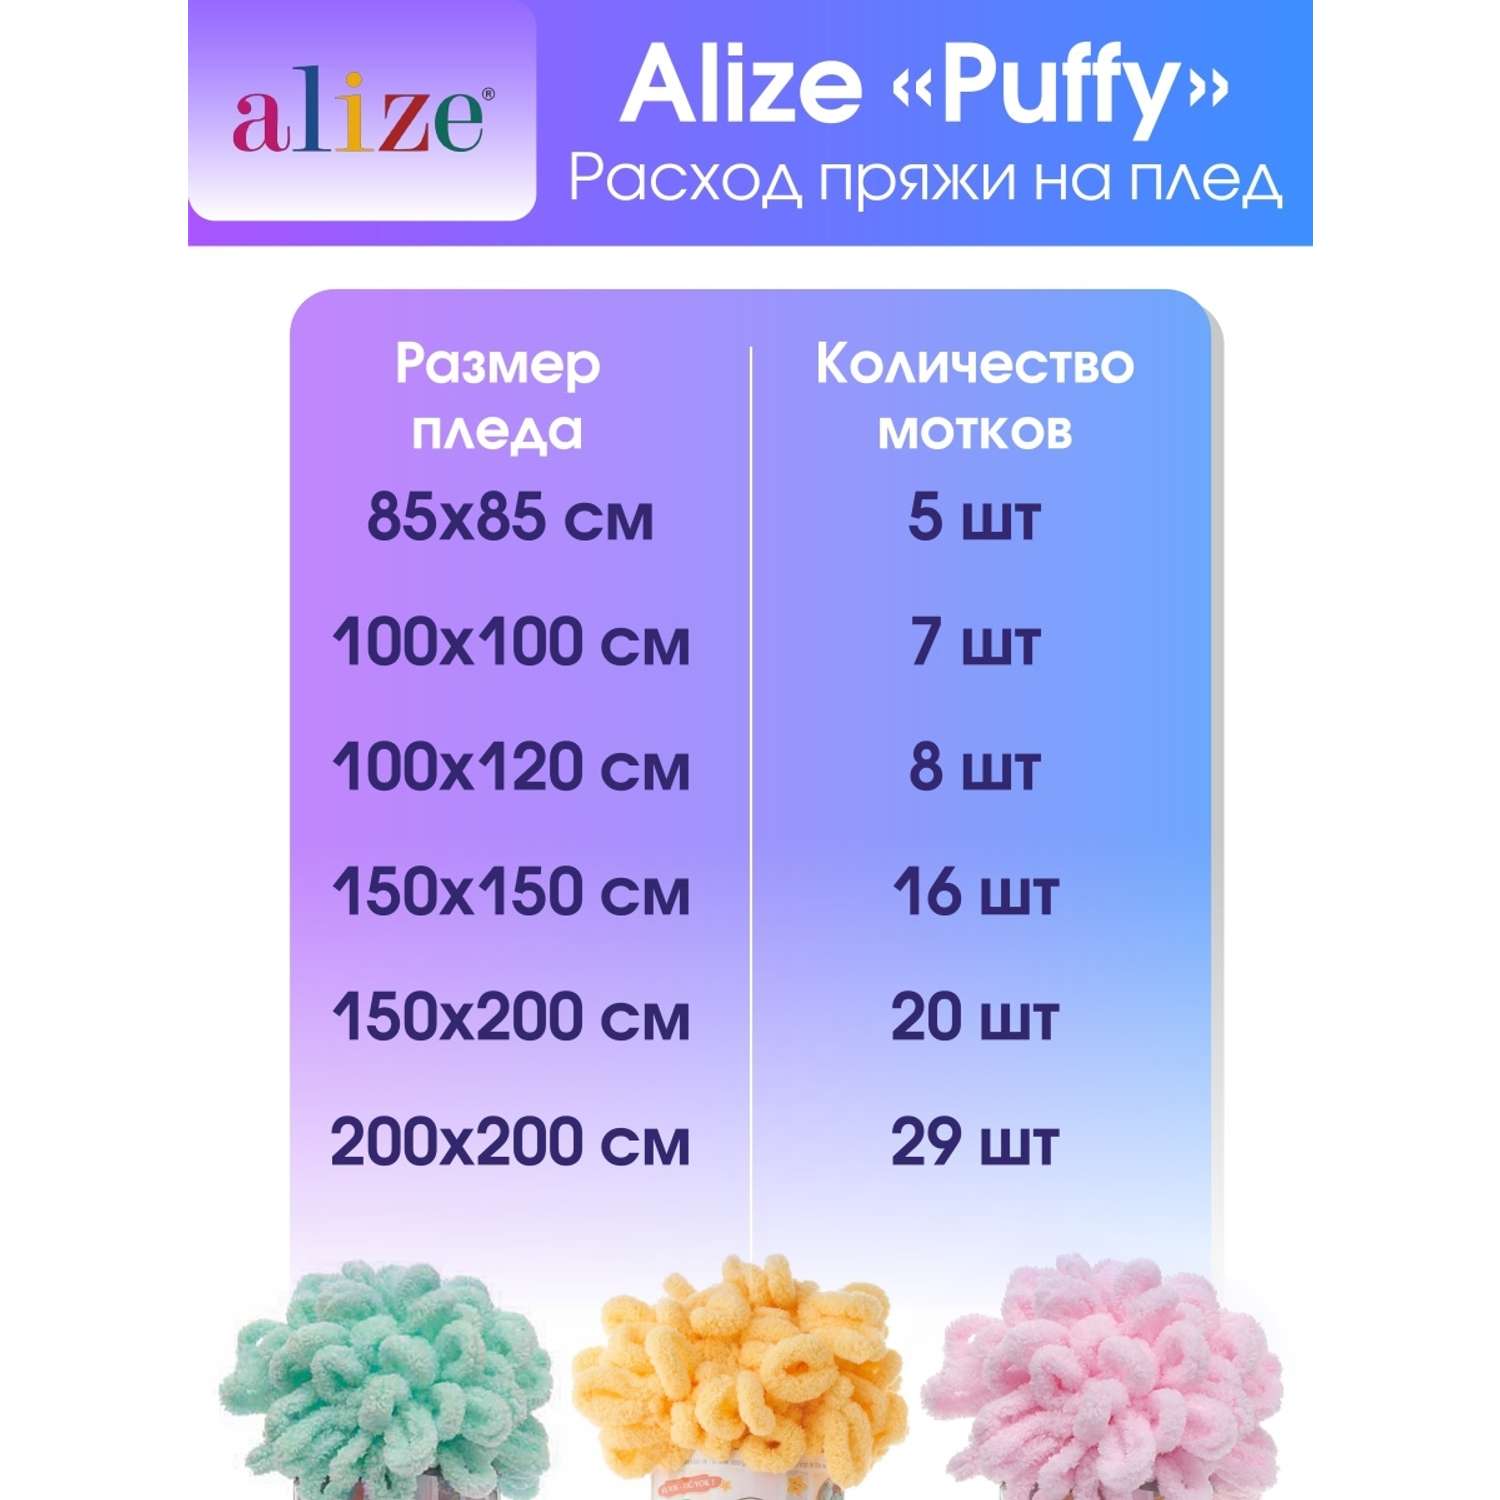 Пряжа для вязания Alize puffy 100 г 9 м микрополиэстер фантазийная плюшевая 741 мята 5 мотков - фото 6